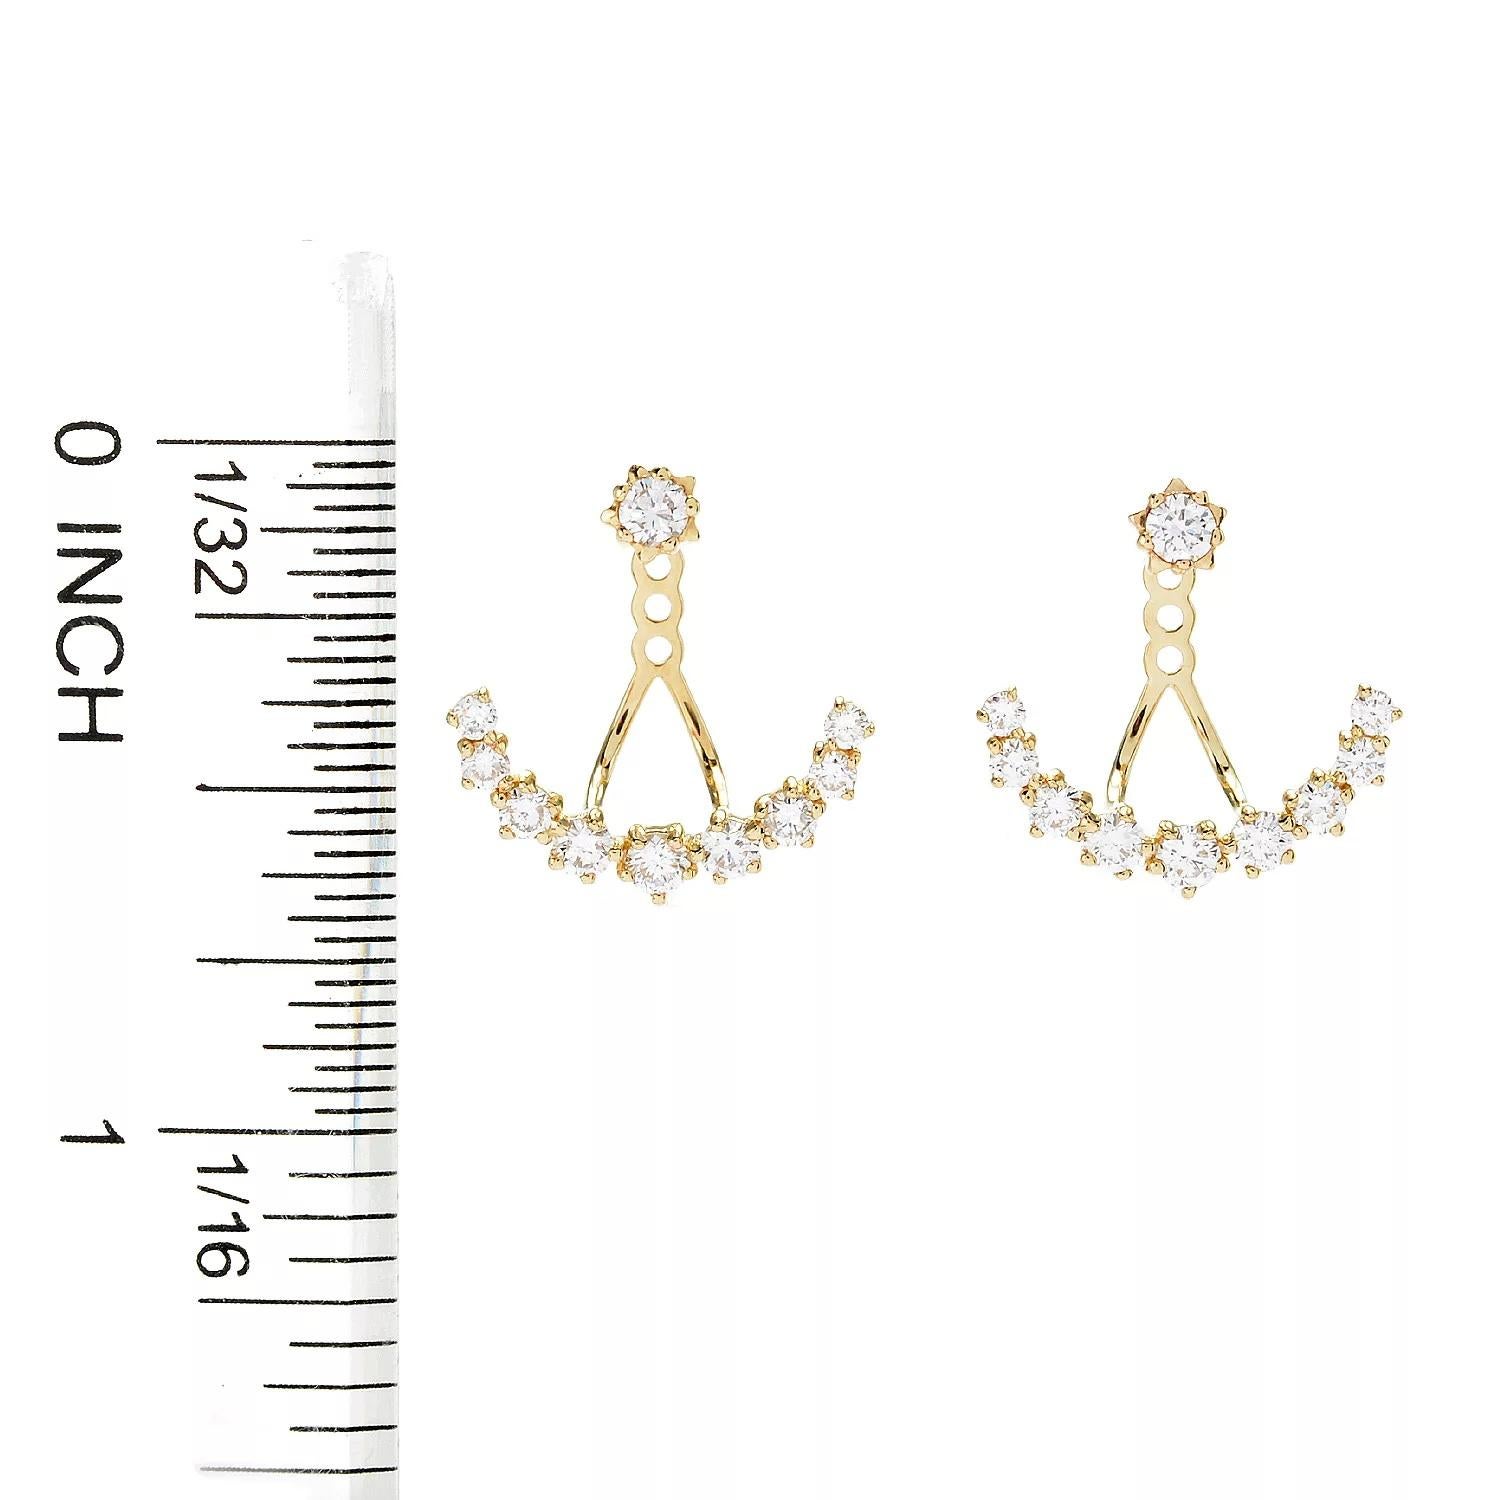 sonia bitton earrings